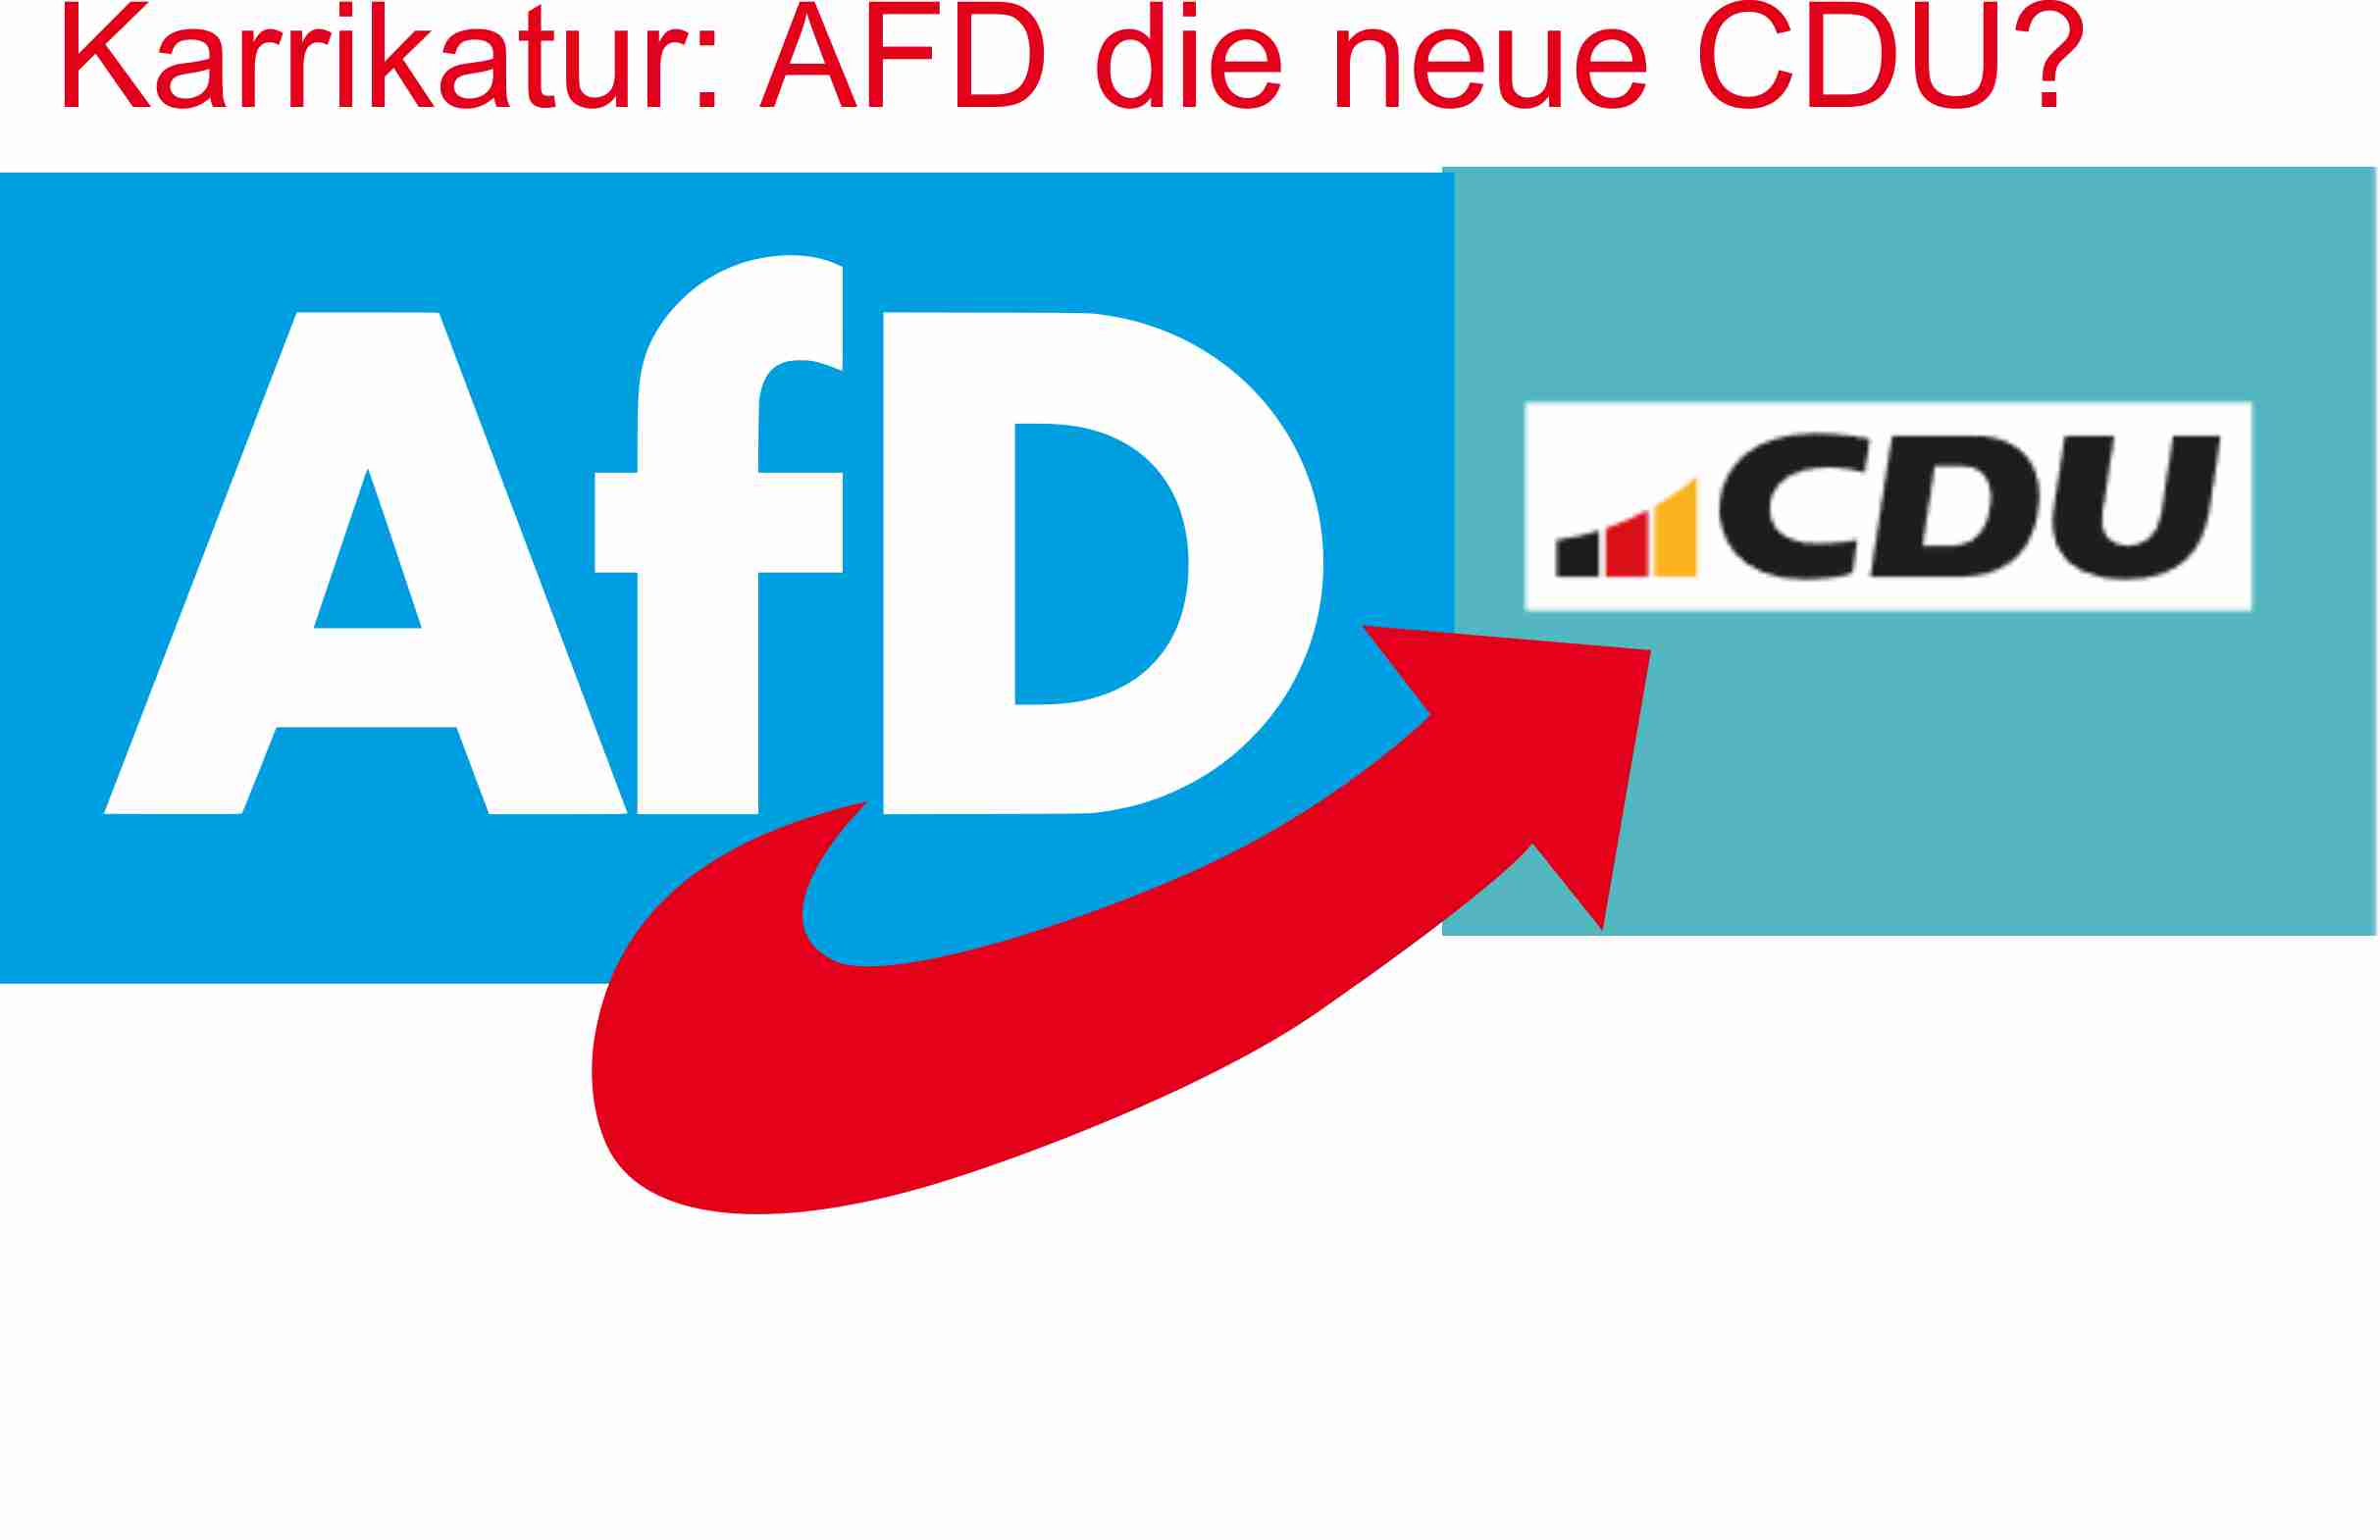 Karikatur von AFD-Logo, welches verschoben wurde und das neue Logo der CDU mit blauen Grund berlappt, wodurch der rote untere Pfeil der AFD auf die Buchstaben CDU zeigt.